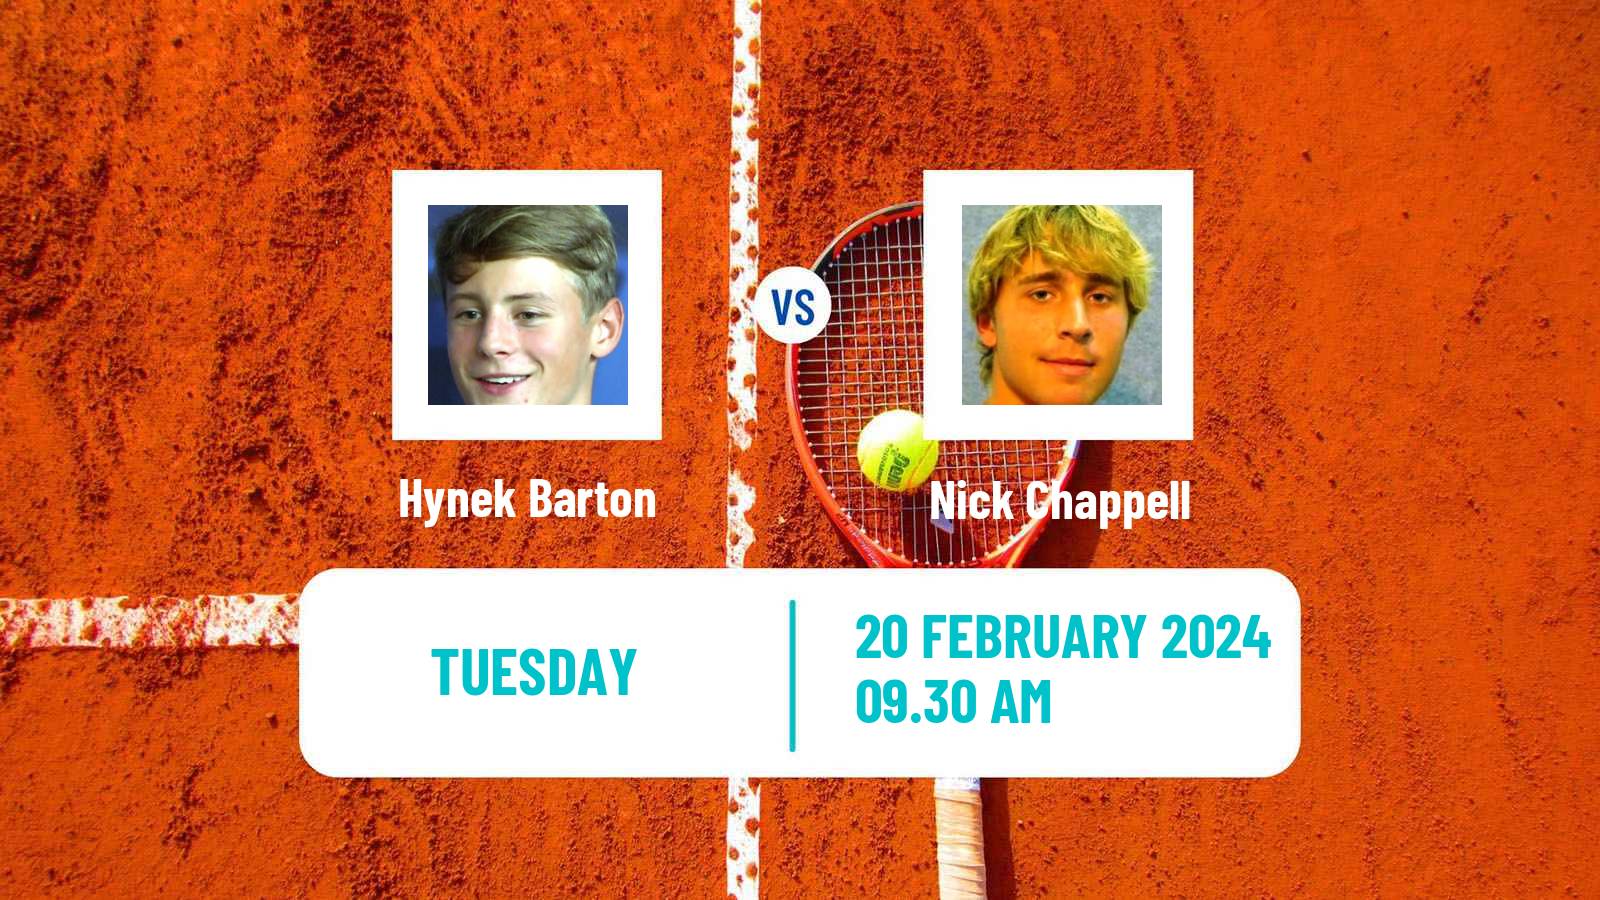 Tennis ITF M25 Vila Real De Santo Antonio 2 Men Hynek Barton - Nick Chappell